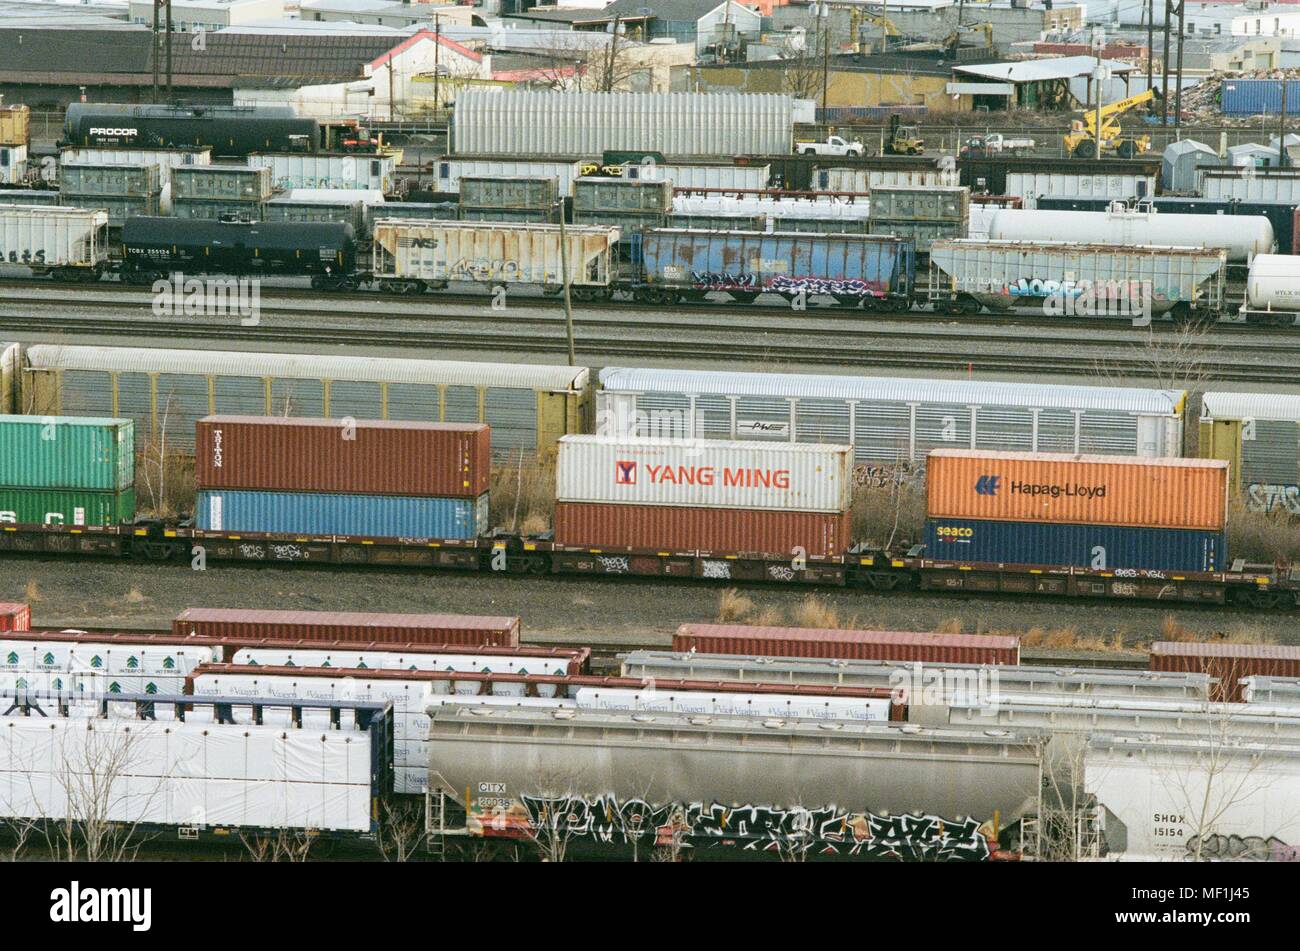 Più treni merci con il traffico merci intermodale contenitori sono visibili in una rotaia di trasporto in cantiere di Newark, New Jersey, compresi contenitori da compagnie di navigazione Yang Ming e Hapag Lloyd, Marzo 18, 2018. () Foto Stock